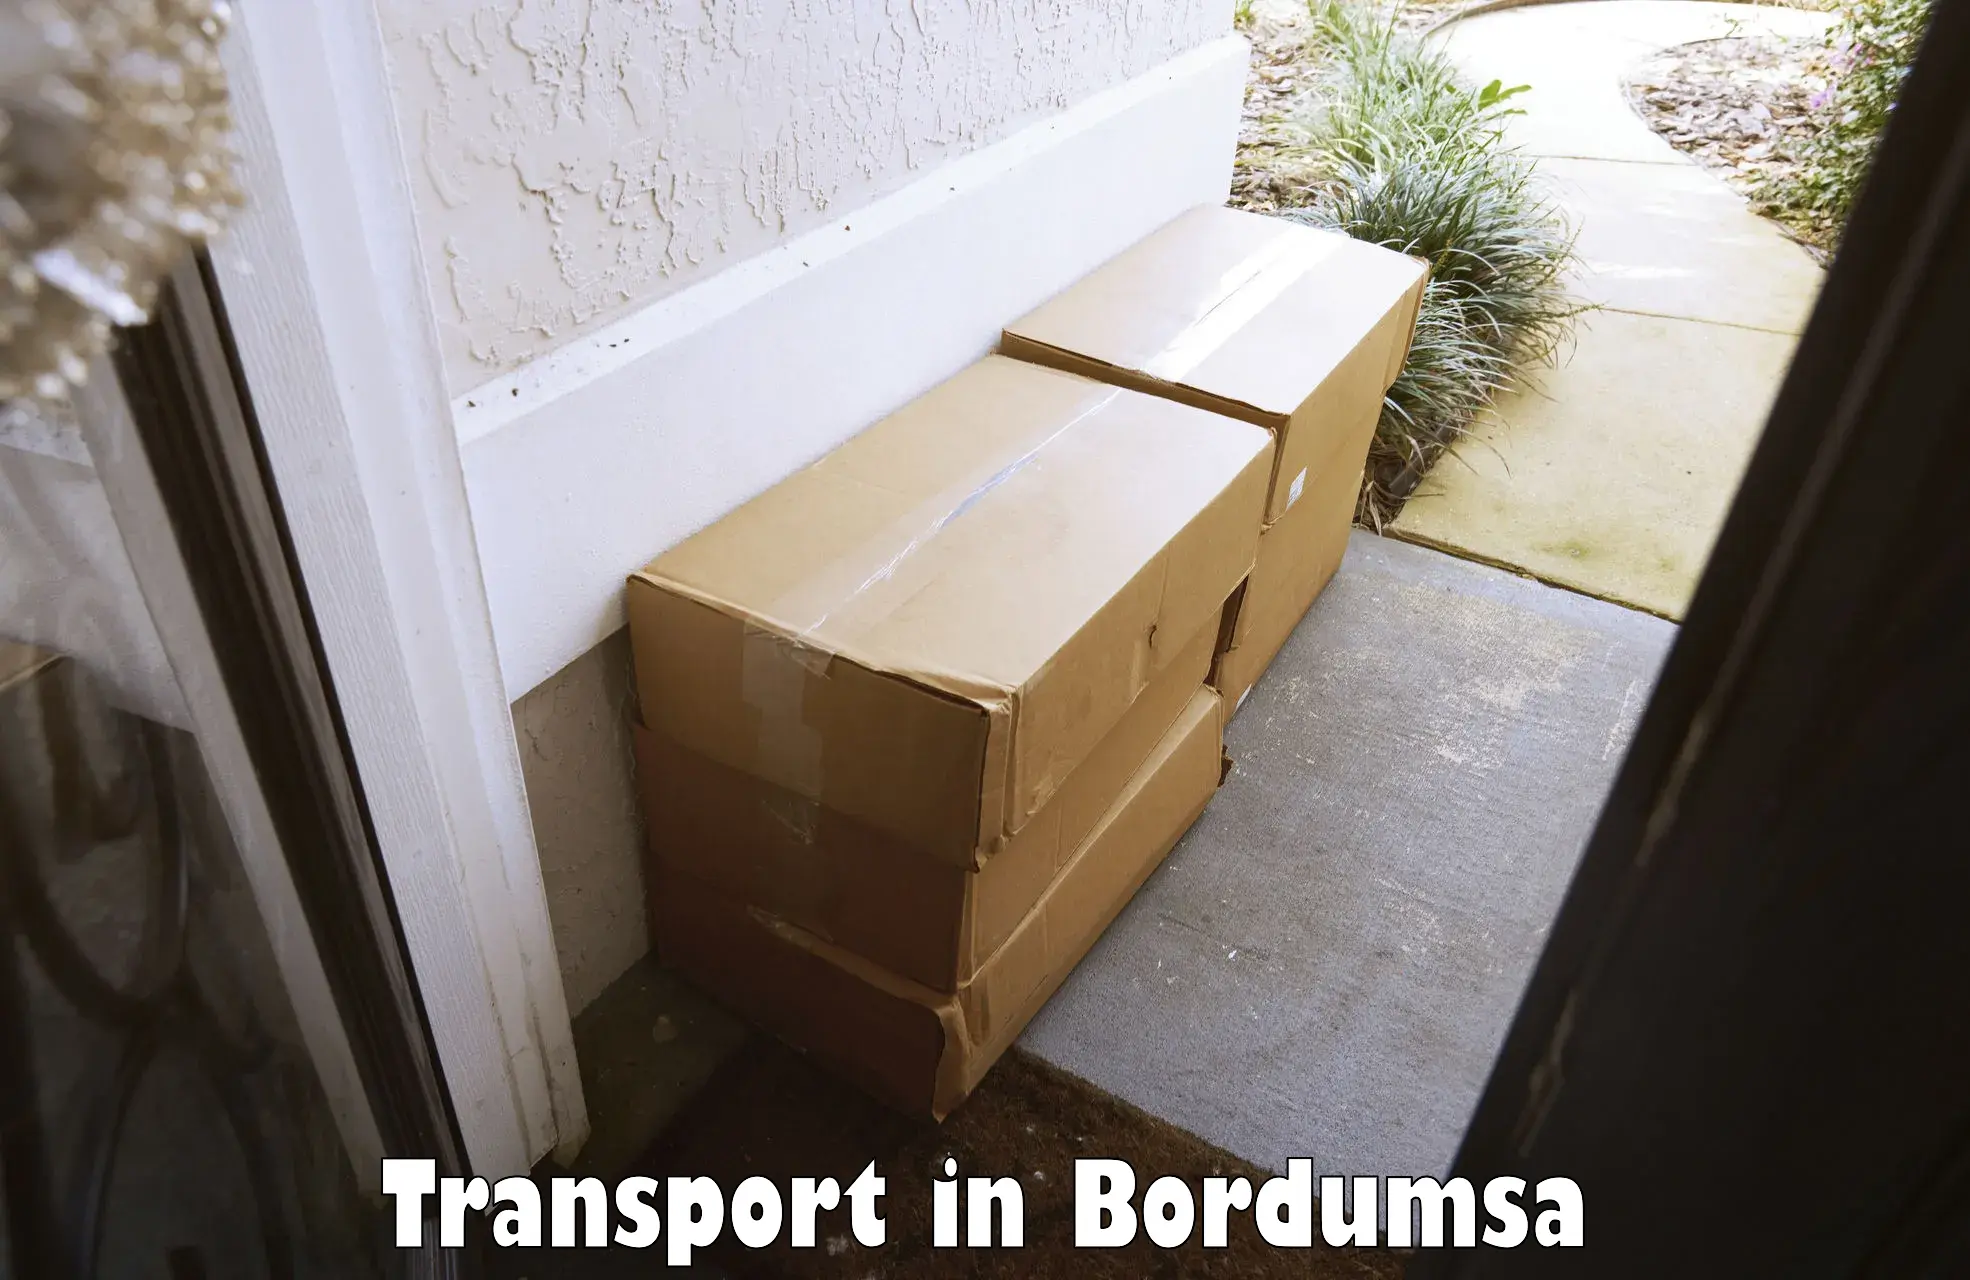 Delivery service in Bordumsa